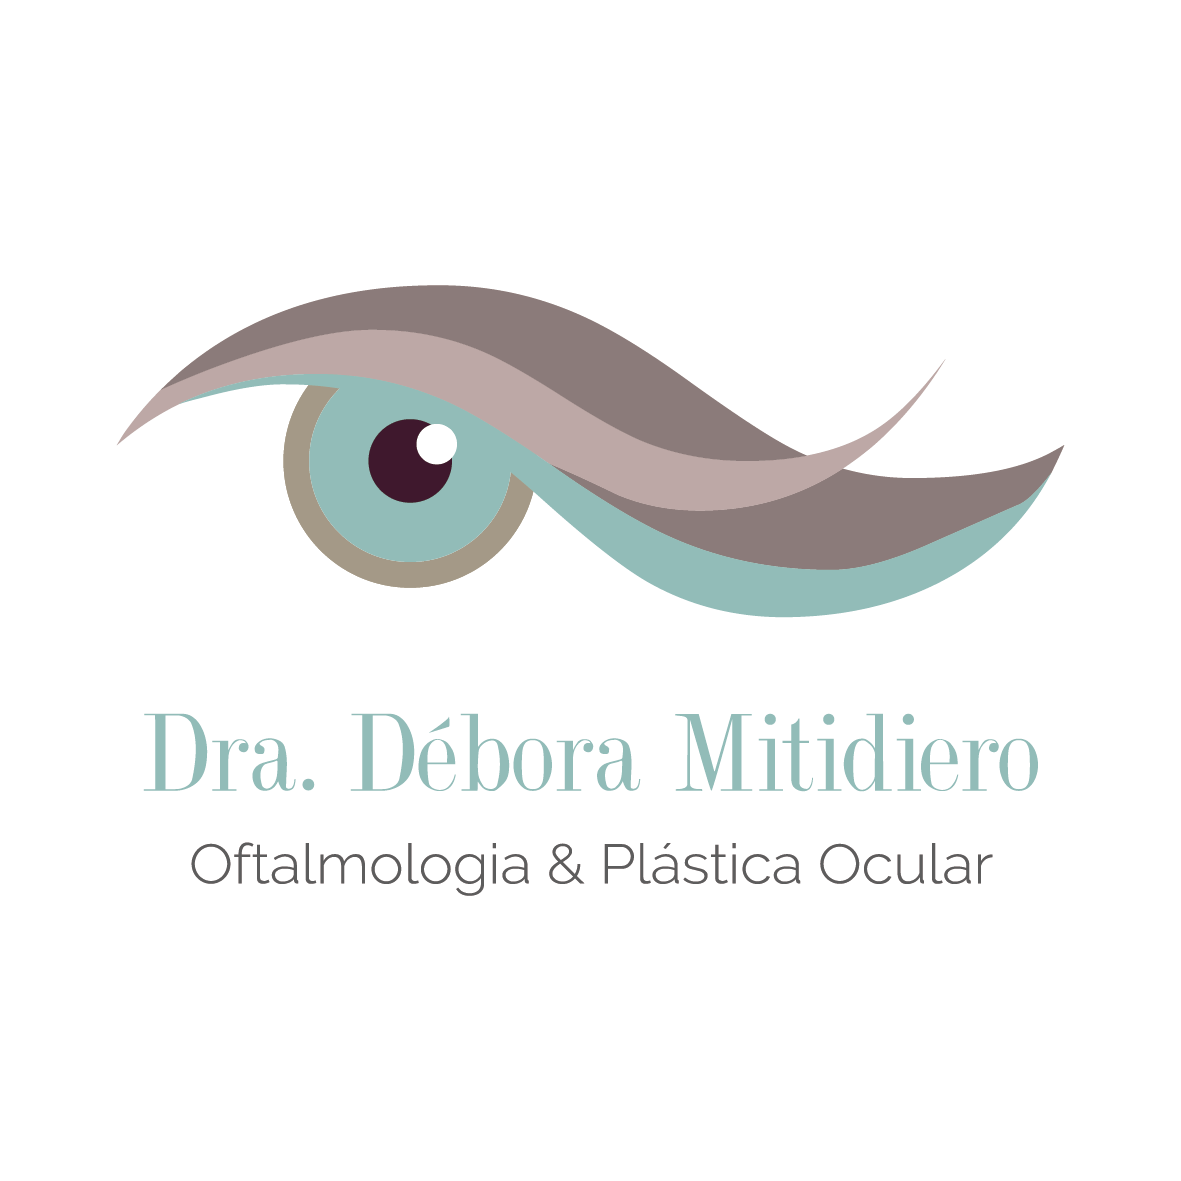 DRA. DÉBORA MITIDIERO - Médicos - Oftalmologia (Olhos) - Itaúna, MG